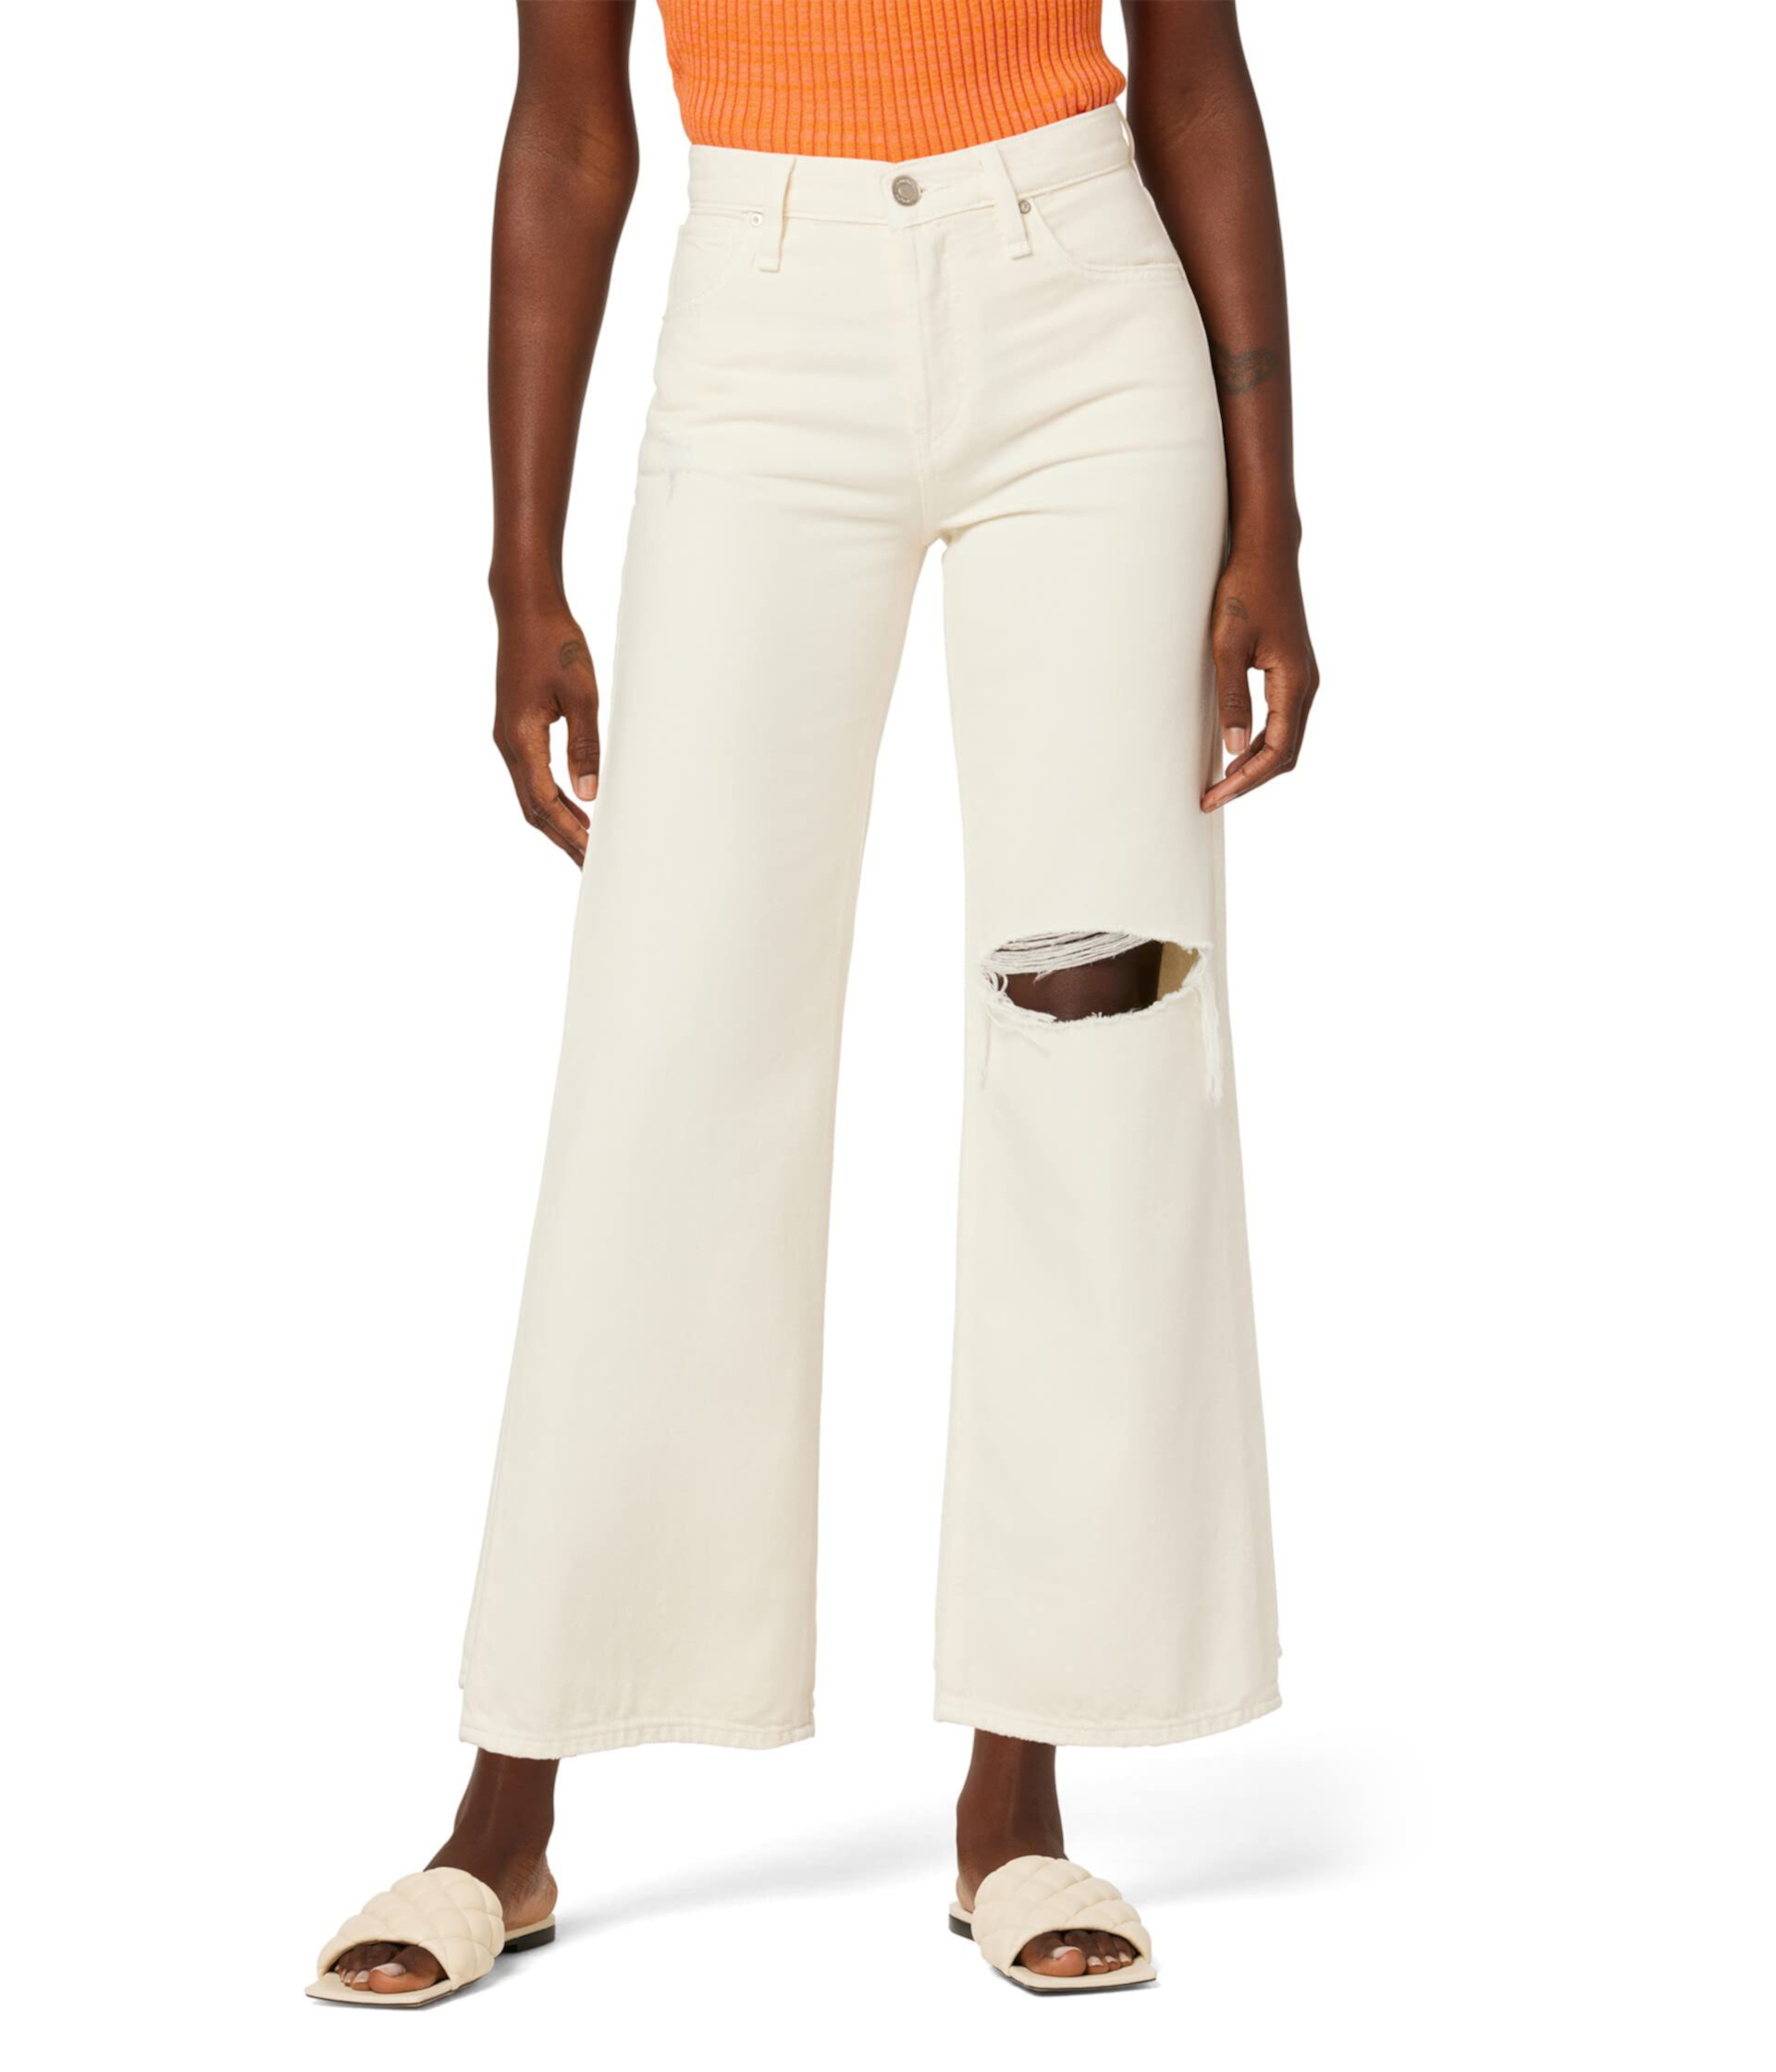 Высокие кеды Rosie с высокой посадкой, широкой лодыжкой и ширинкой на закрытых пуговицах цвета Ecru Vintage. Hudson Jeans